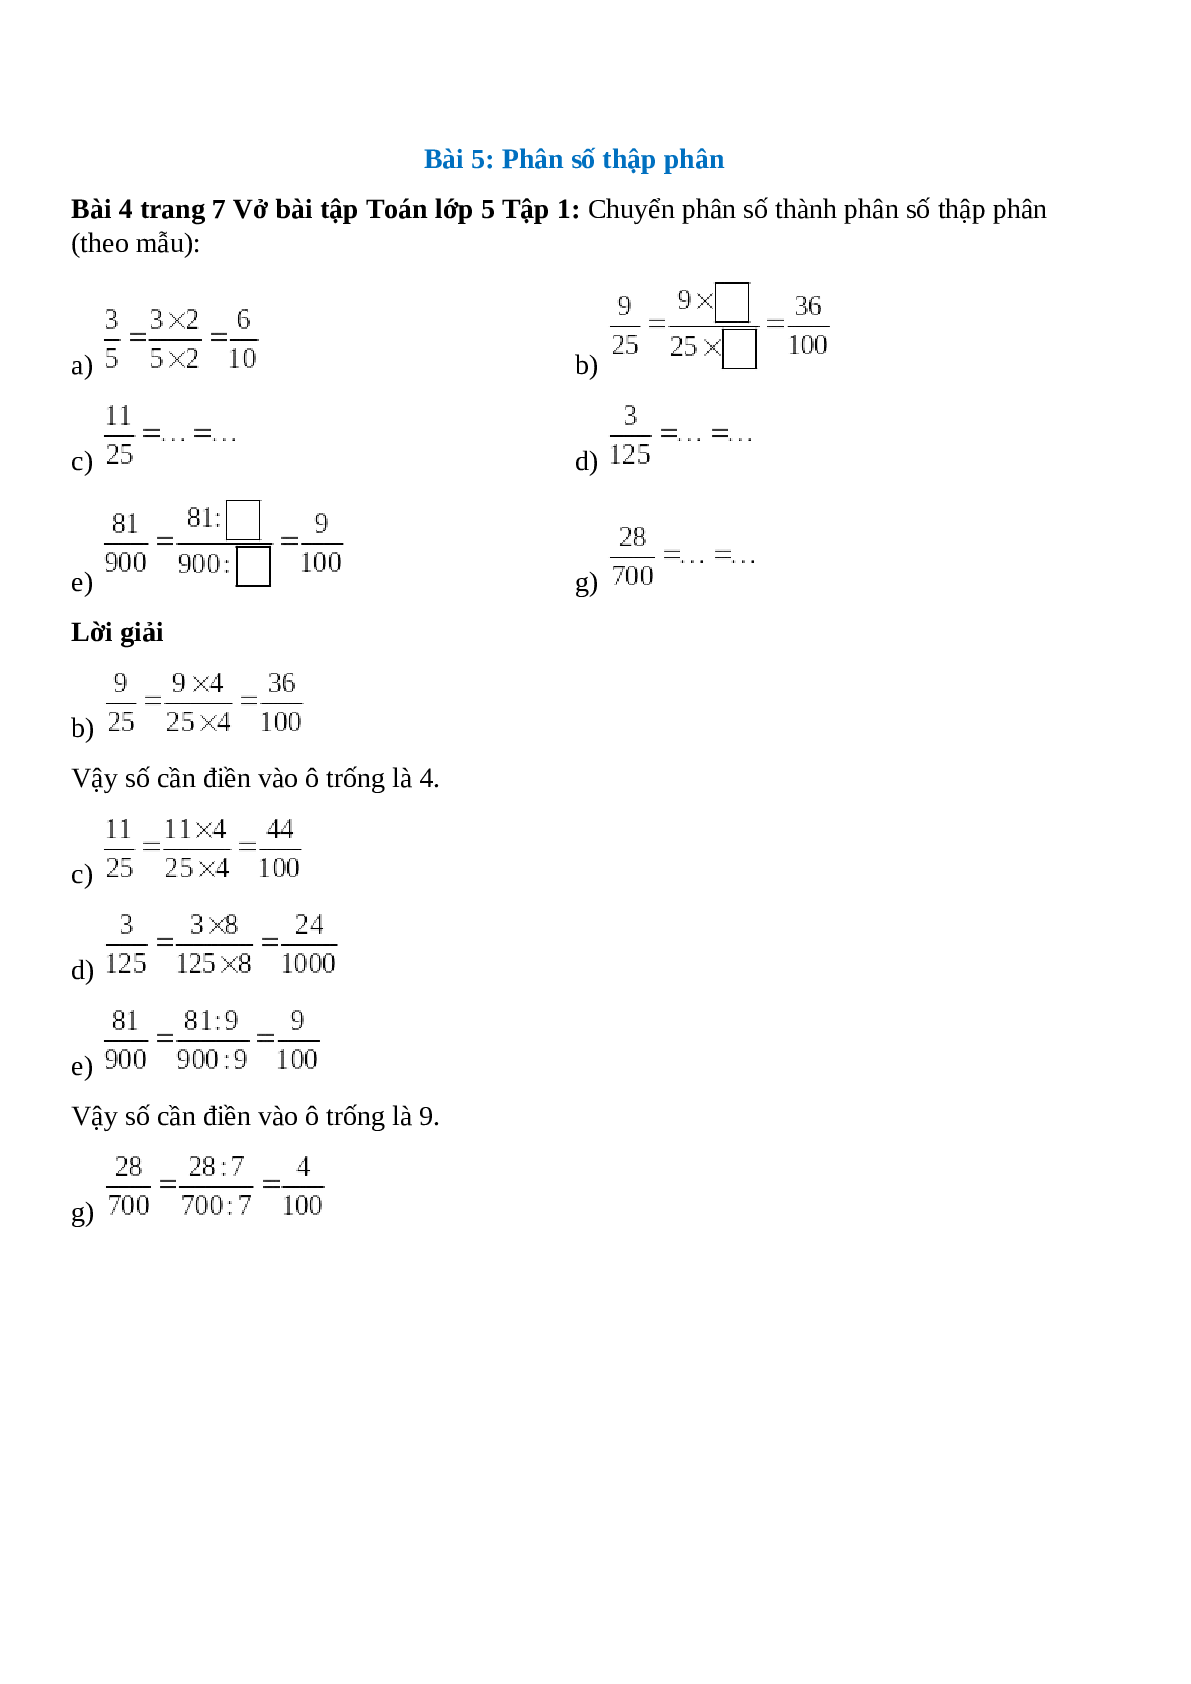 Chuyển phân số thành phân số thập phân (theo mẫu) Bài 4 trang 7 Vở bài tập Toán lớp 5 (trang 1)